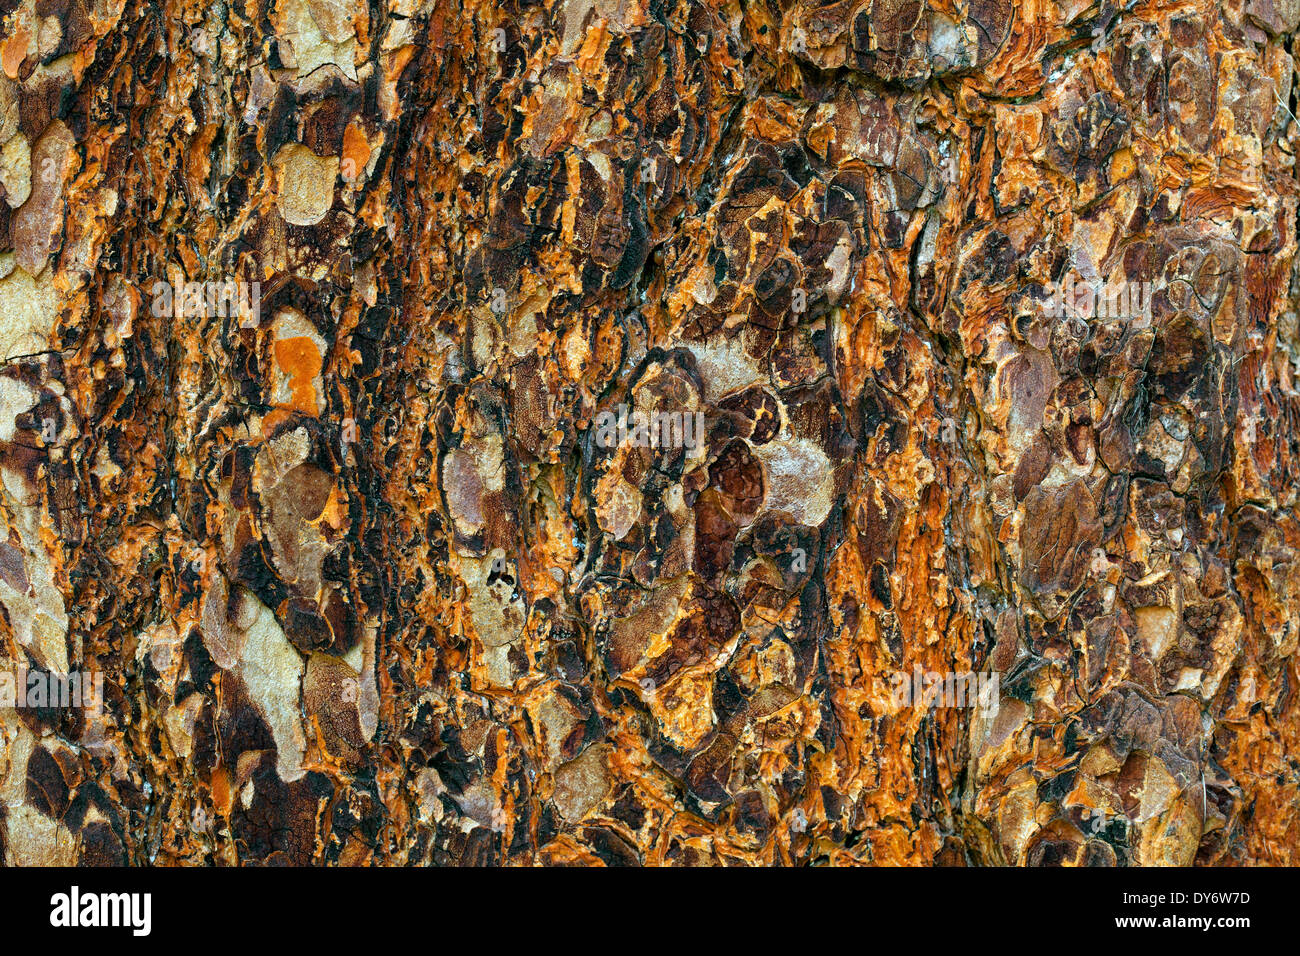 Swiss pine / Swiss stone pine / Arolla pine (Pinus cembra), close up of tree bark Stock Photo